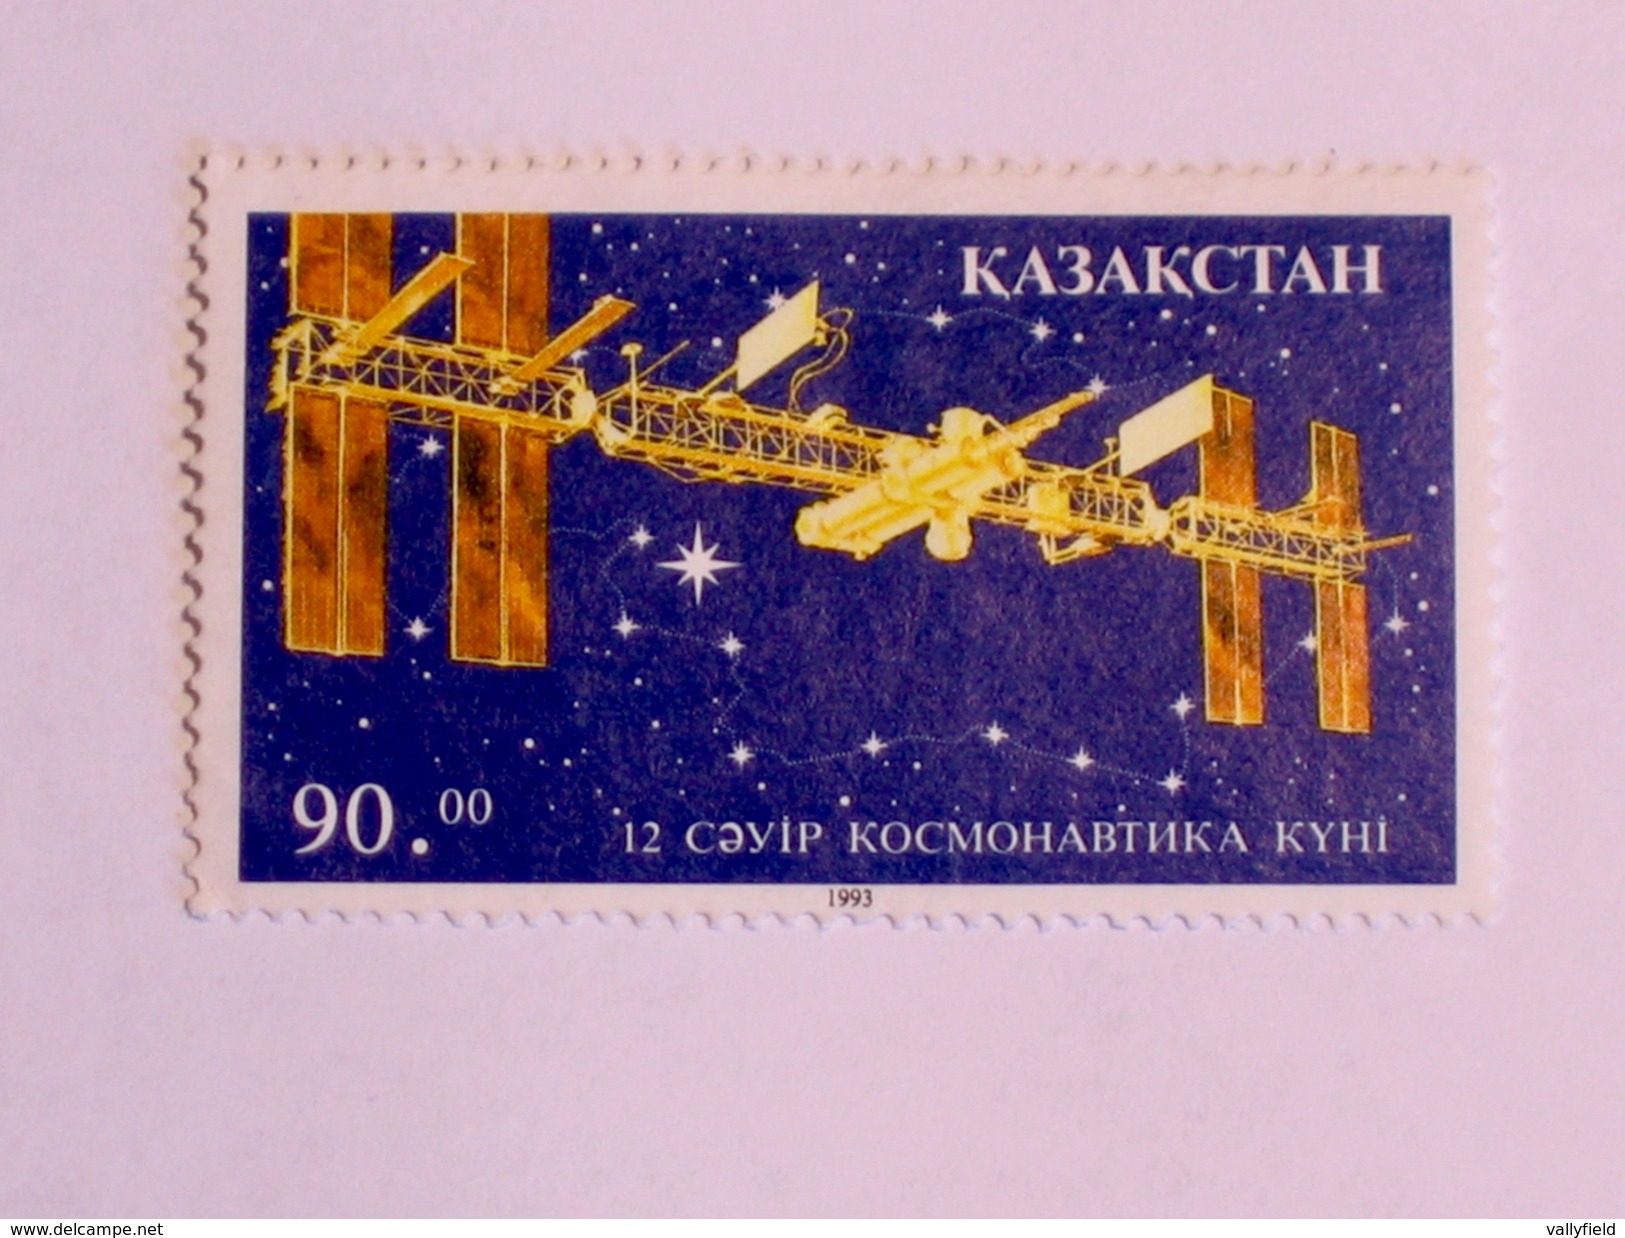 KAZAKSTAN  1993  LOT #1 SPACE - Kasachstan